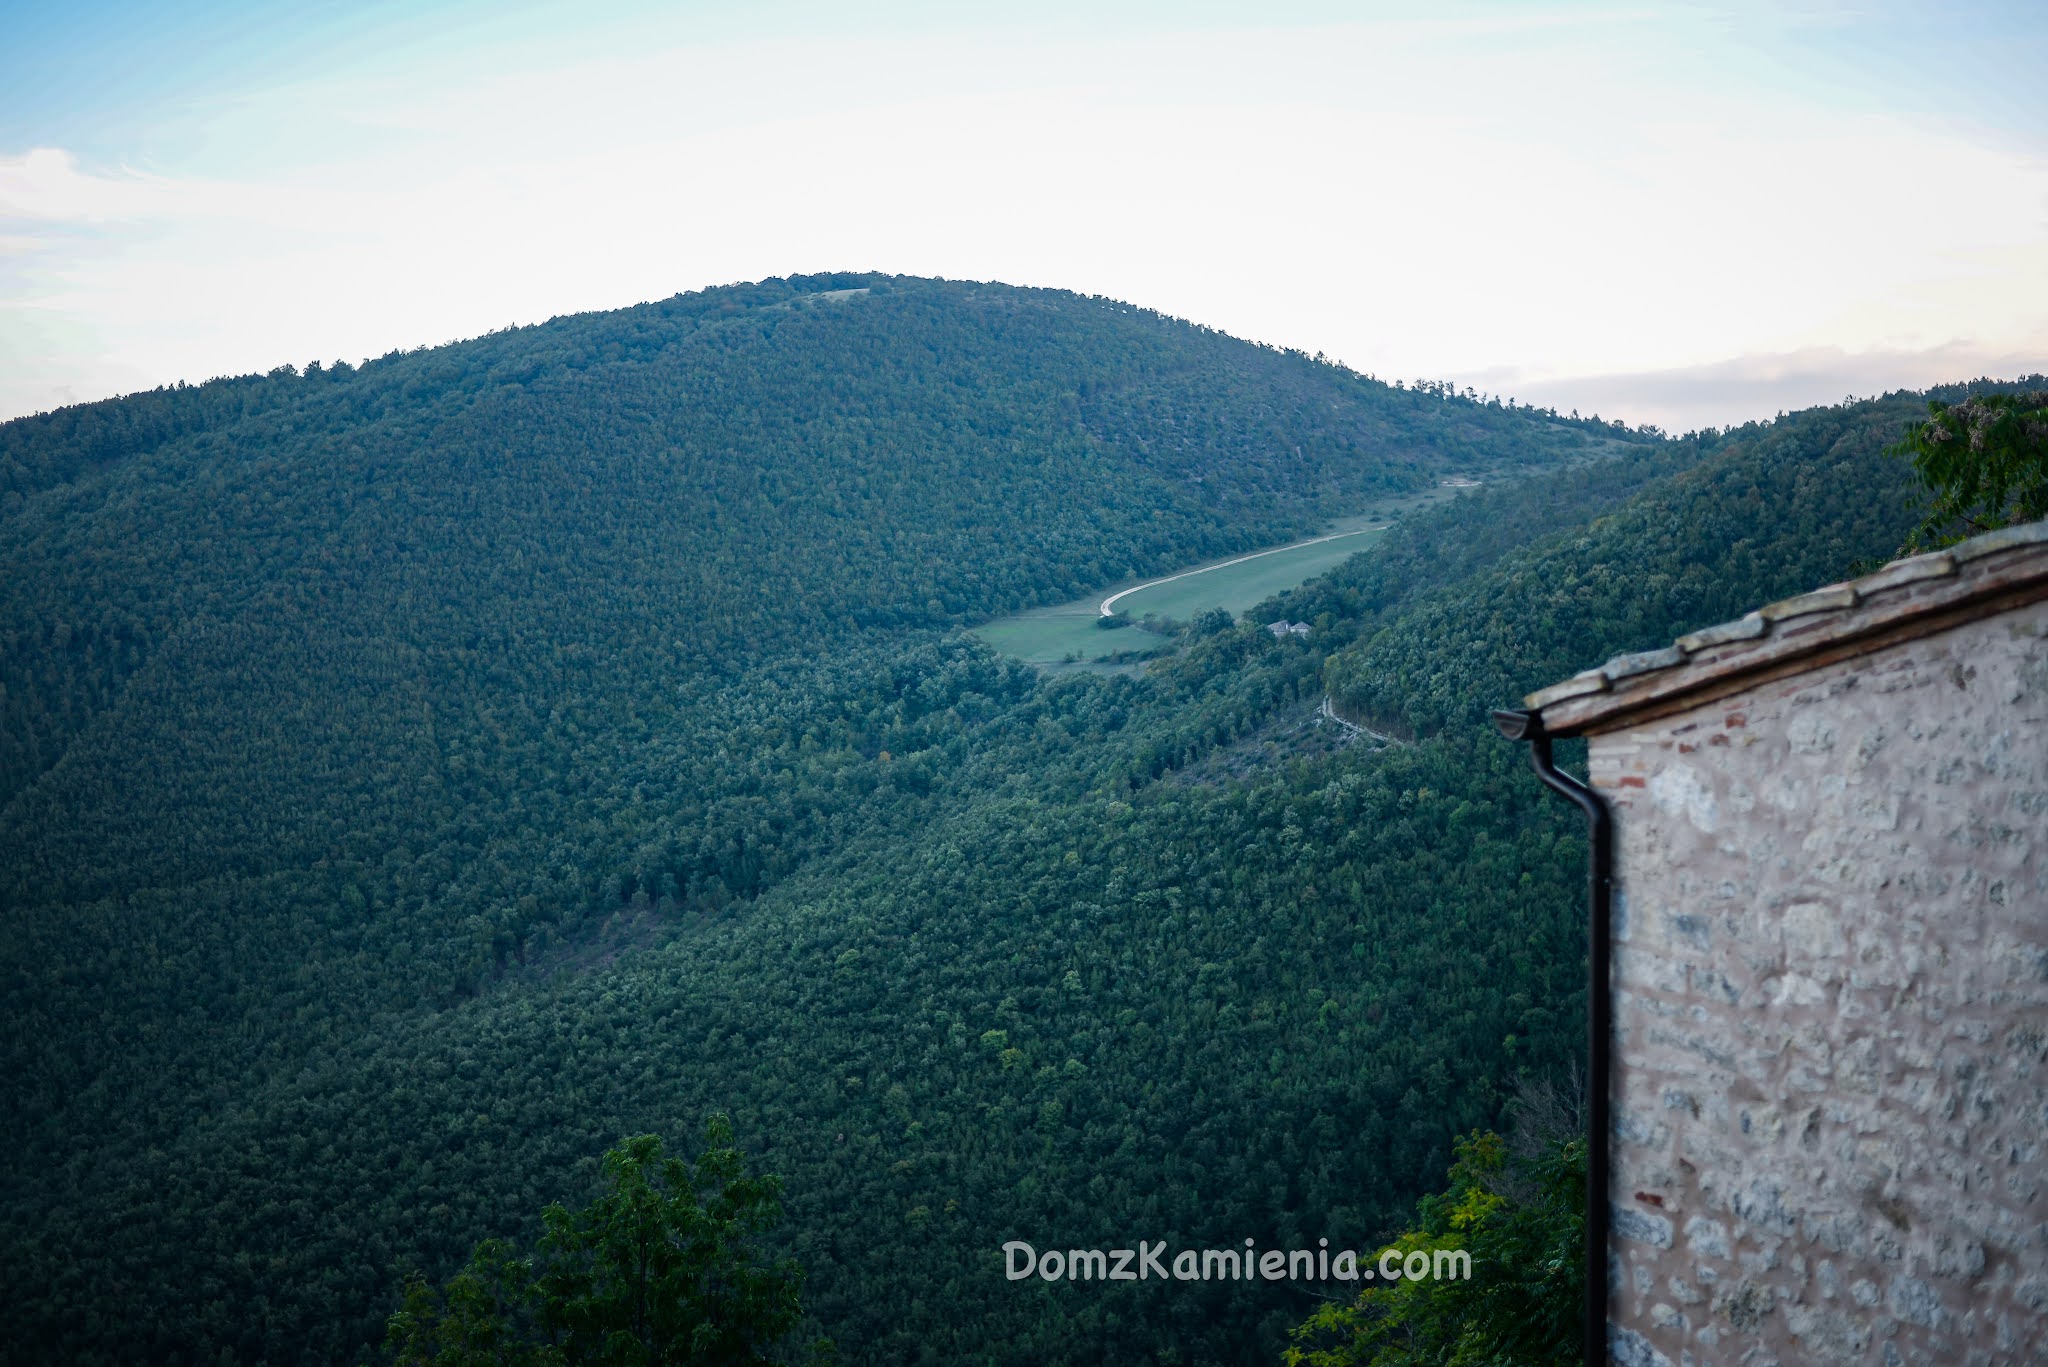 Elcito, Marche nieznany region Włoch, Dom z Kamienia blog